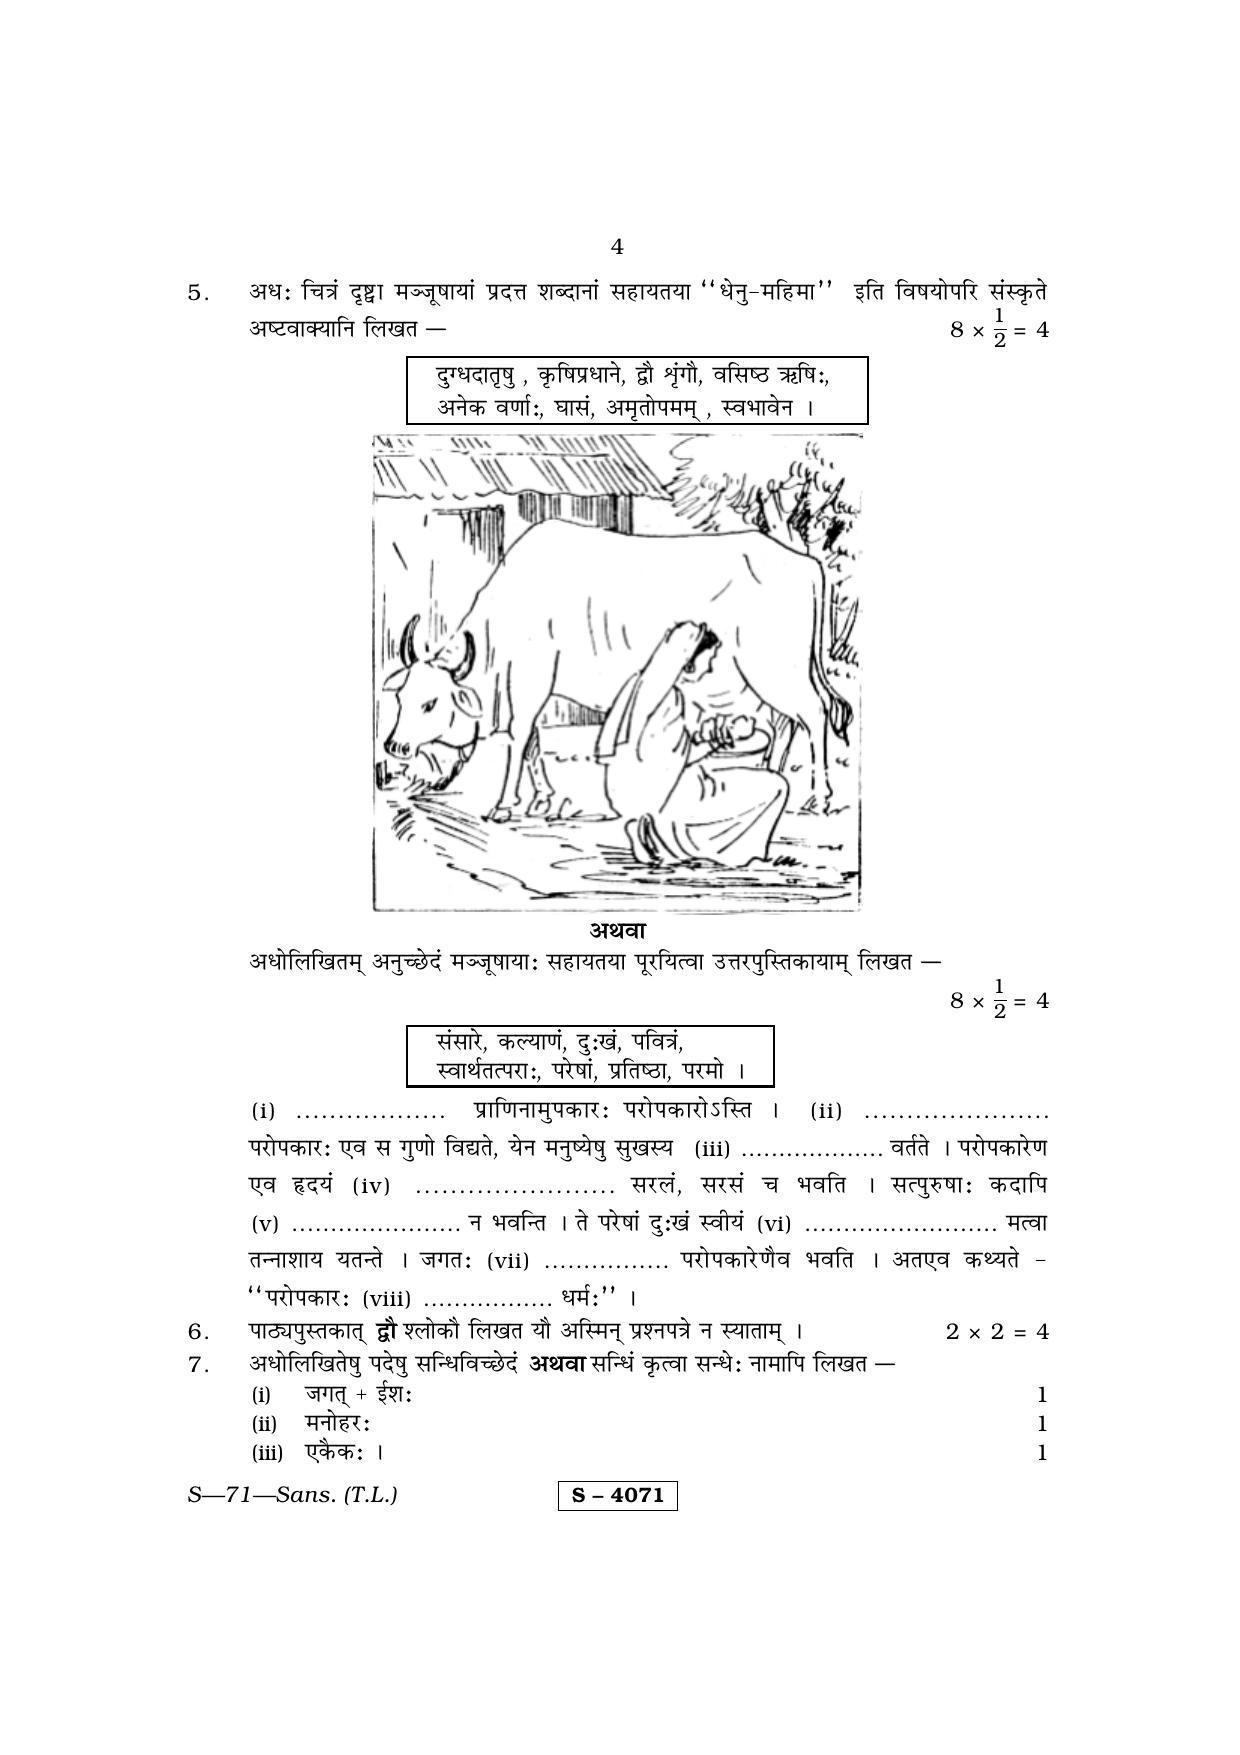 RBSE Class 10 Sanskrit (T.L.) 2015 Question Paper - Page 4